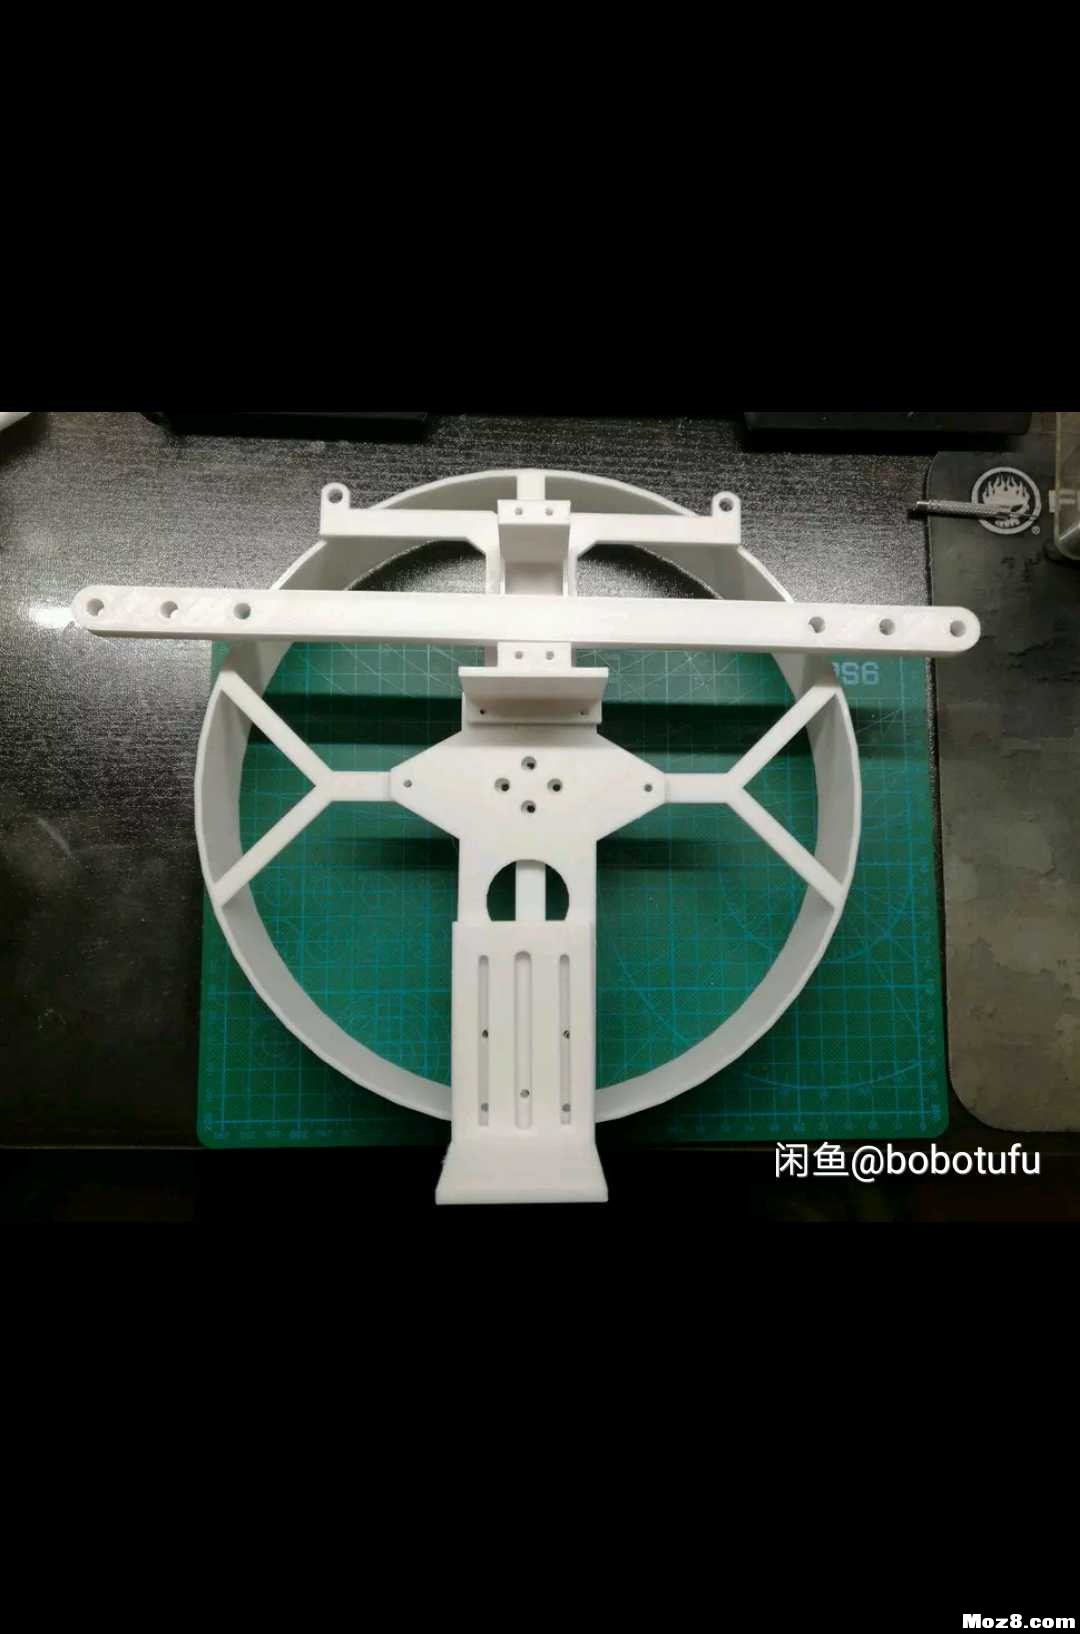 遥控动力伞 3D机架重画 模型,固定翼,舵机,电调,电机 作者:bobotufu 5119 